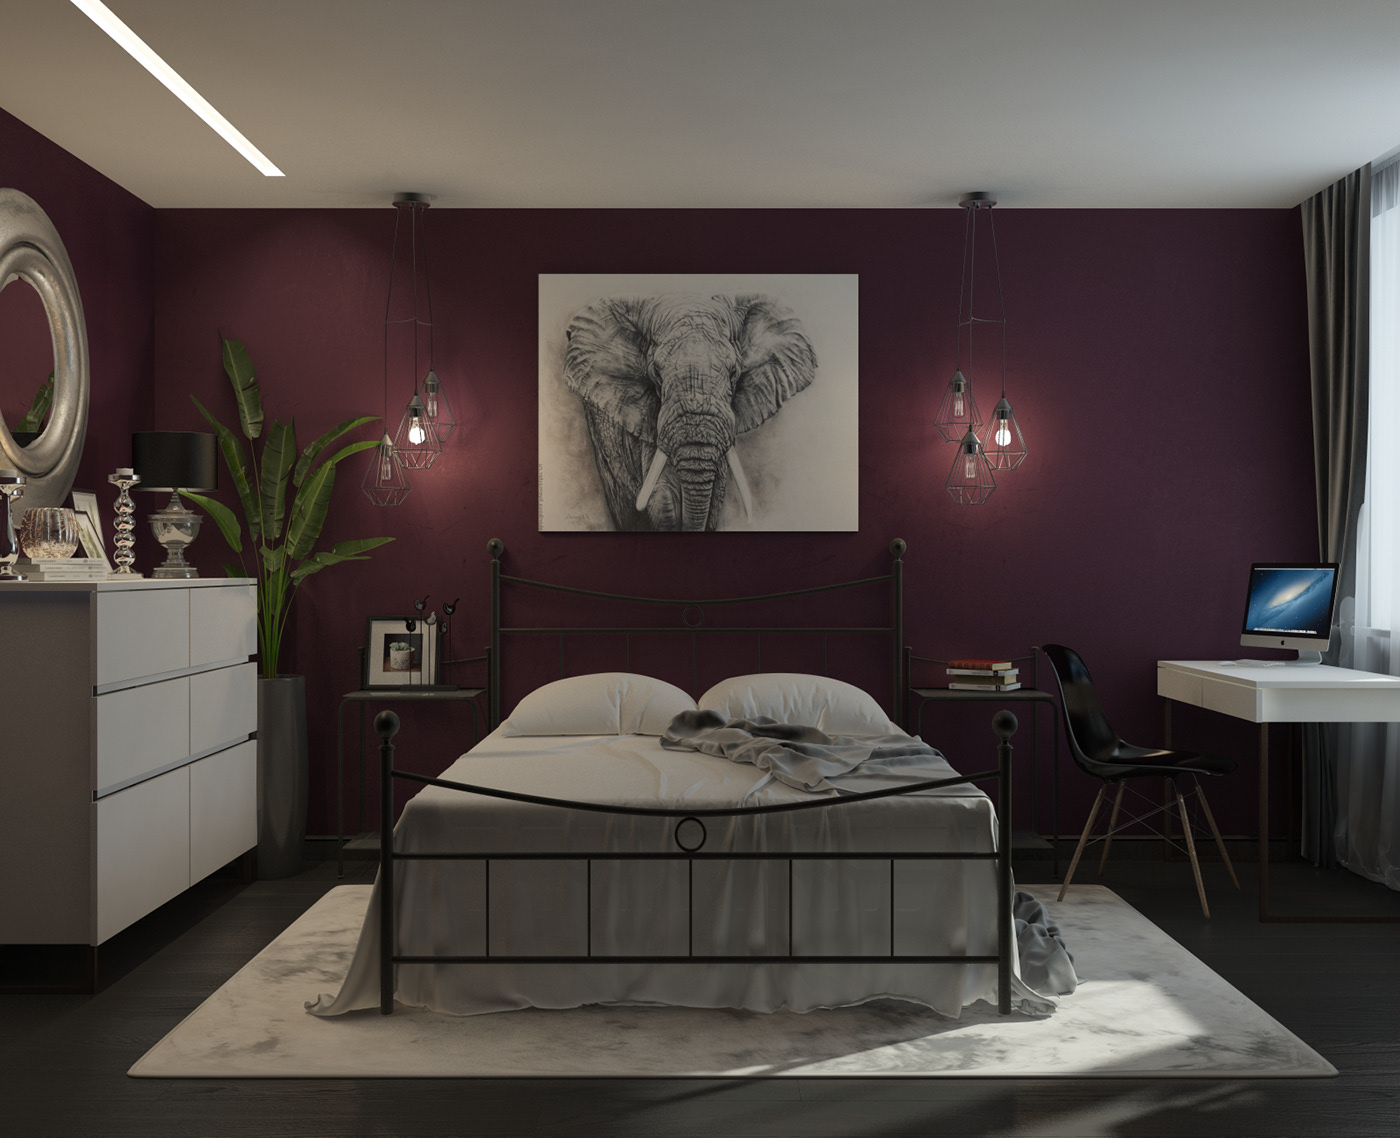 Phòng ngủ thứ 2 được thiết kế theo phong cách năng động, sáng tạo